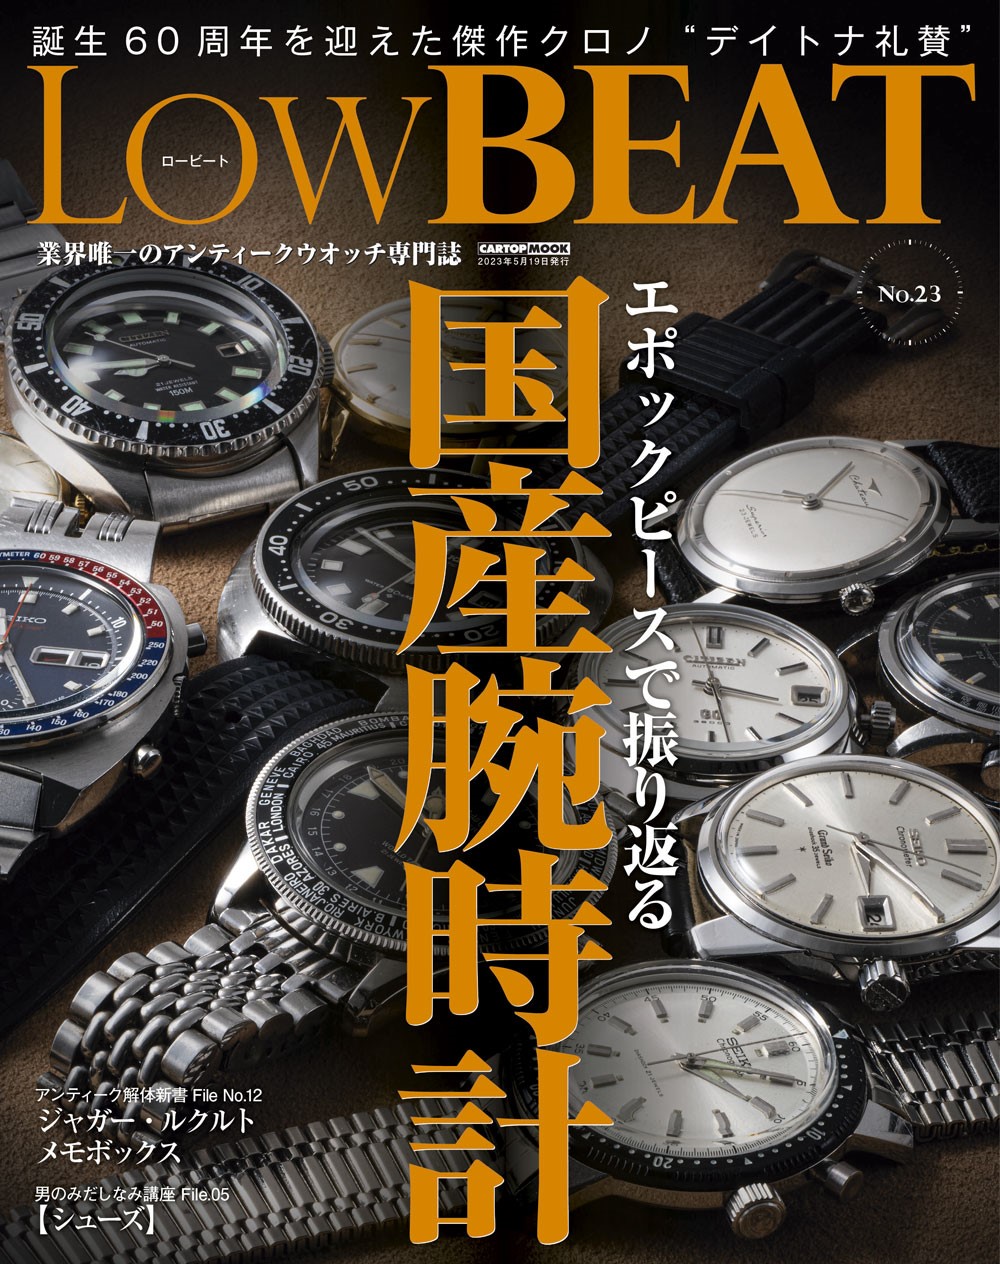 【4/20発売】『Low BEAT No.23』掲載